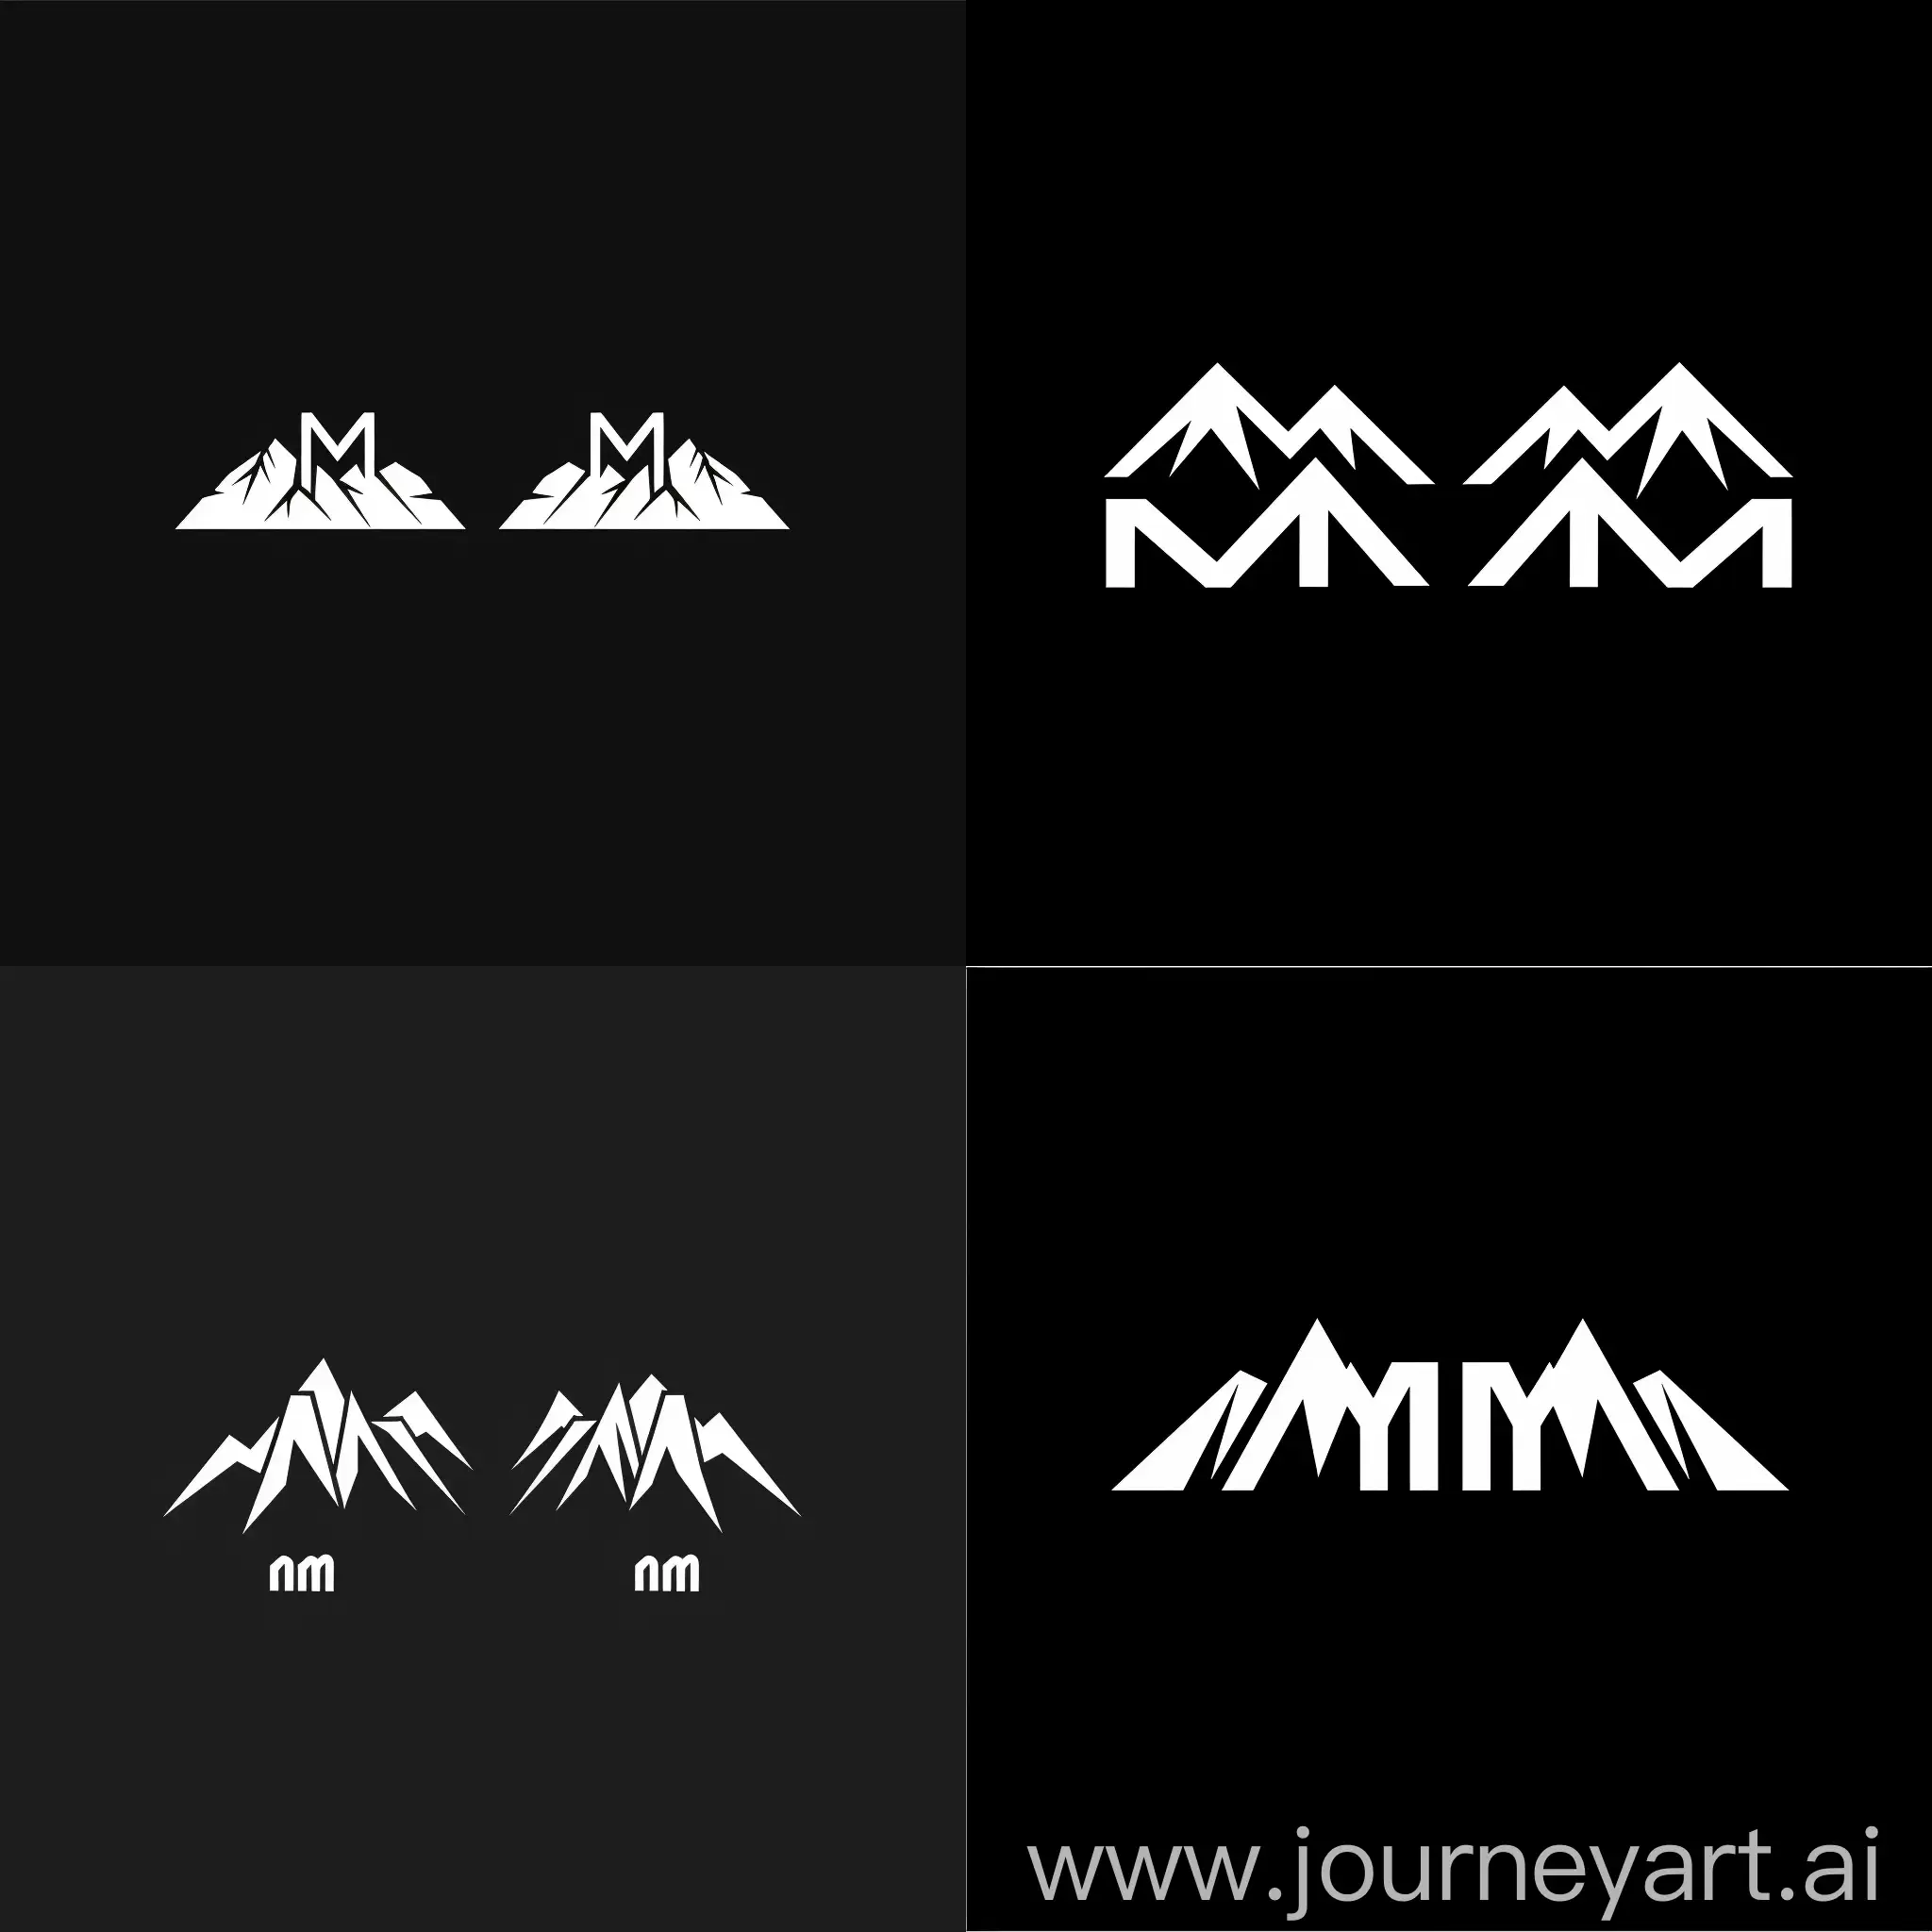 Логотип черно белый две буквы mm в виде гор